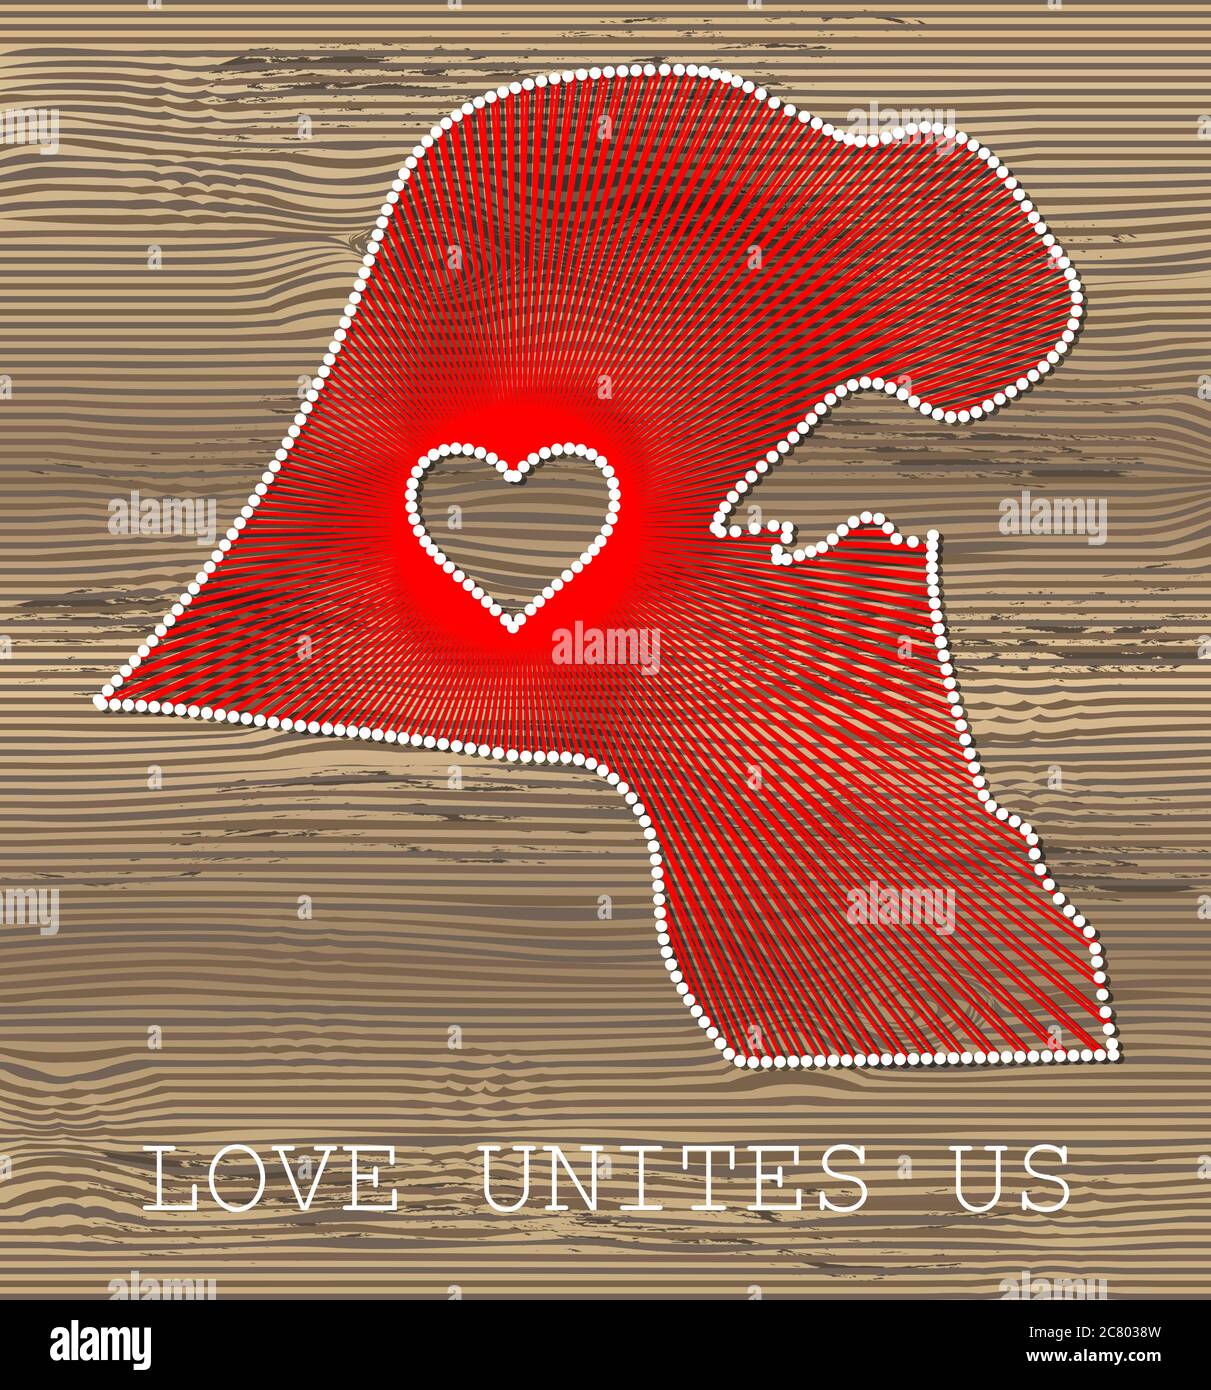 Kuwaits Kunst Vektorkarte mit Herz. Fadenkunst, Garn und Stifte auf Holzplanken Textur. Liebe verbindet uns. Botschaft der Liebe. Kuwaitische Kunstkarte Stock Vektor